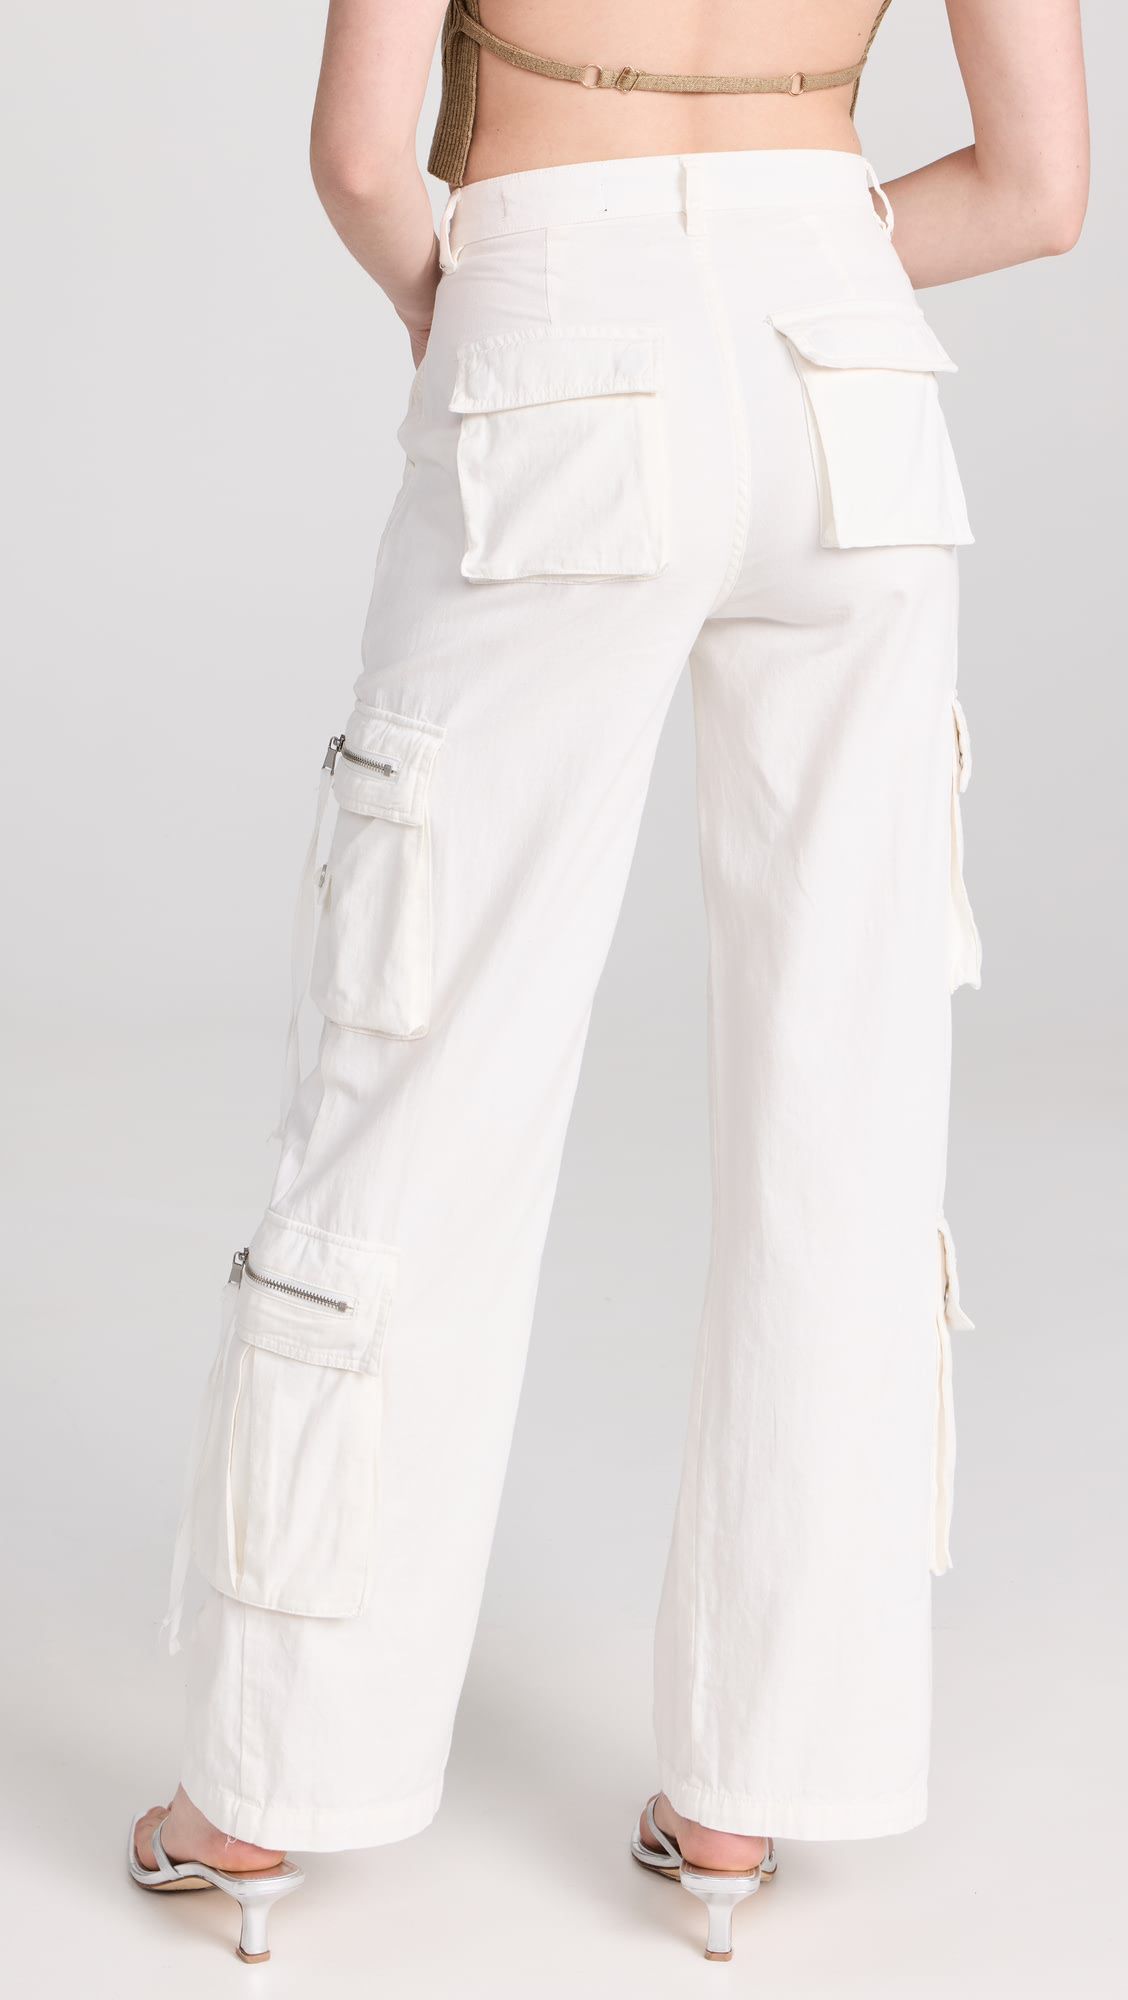 Zipper Feature Pocket High-waisted Cargo Pant